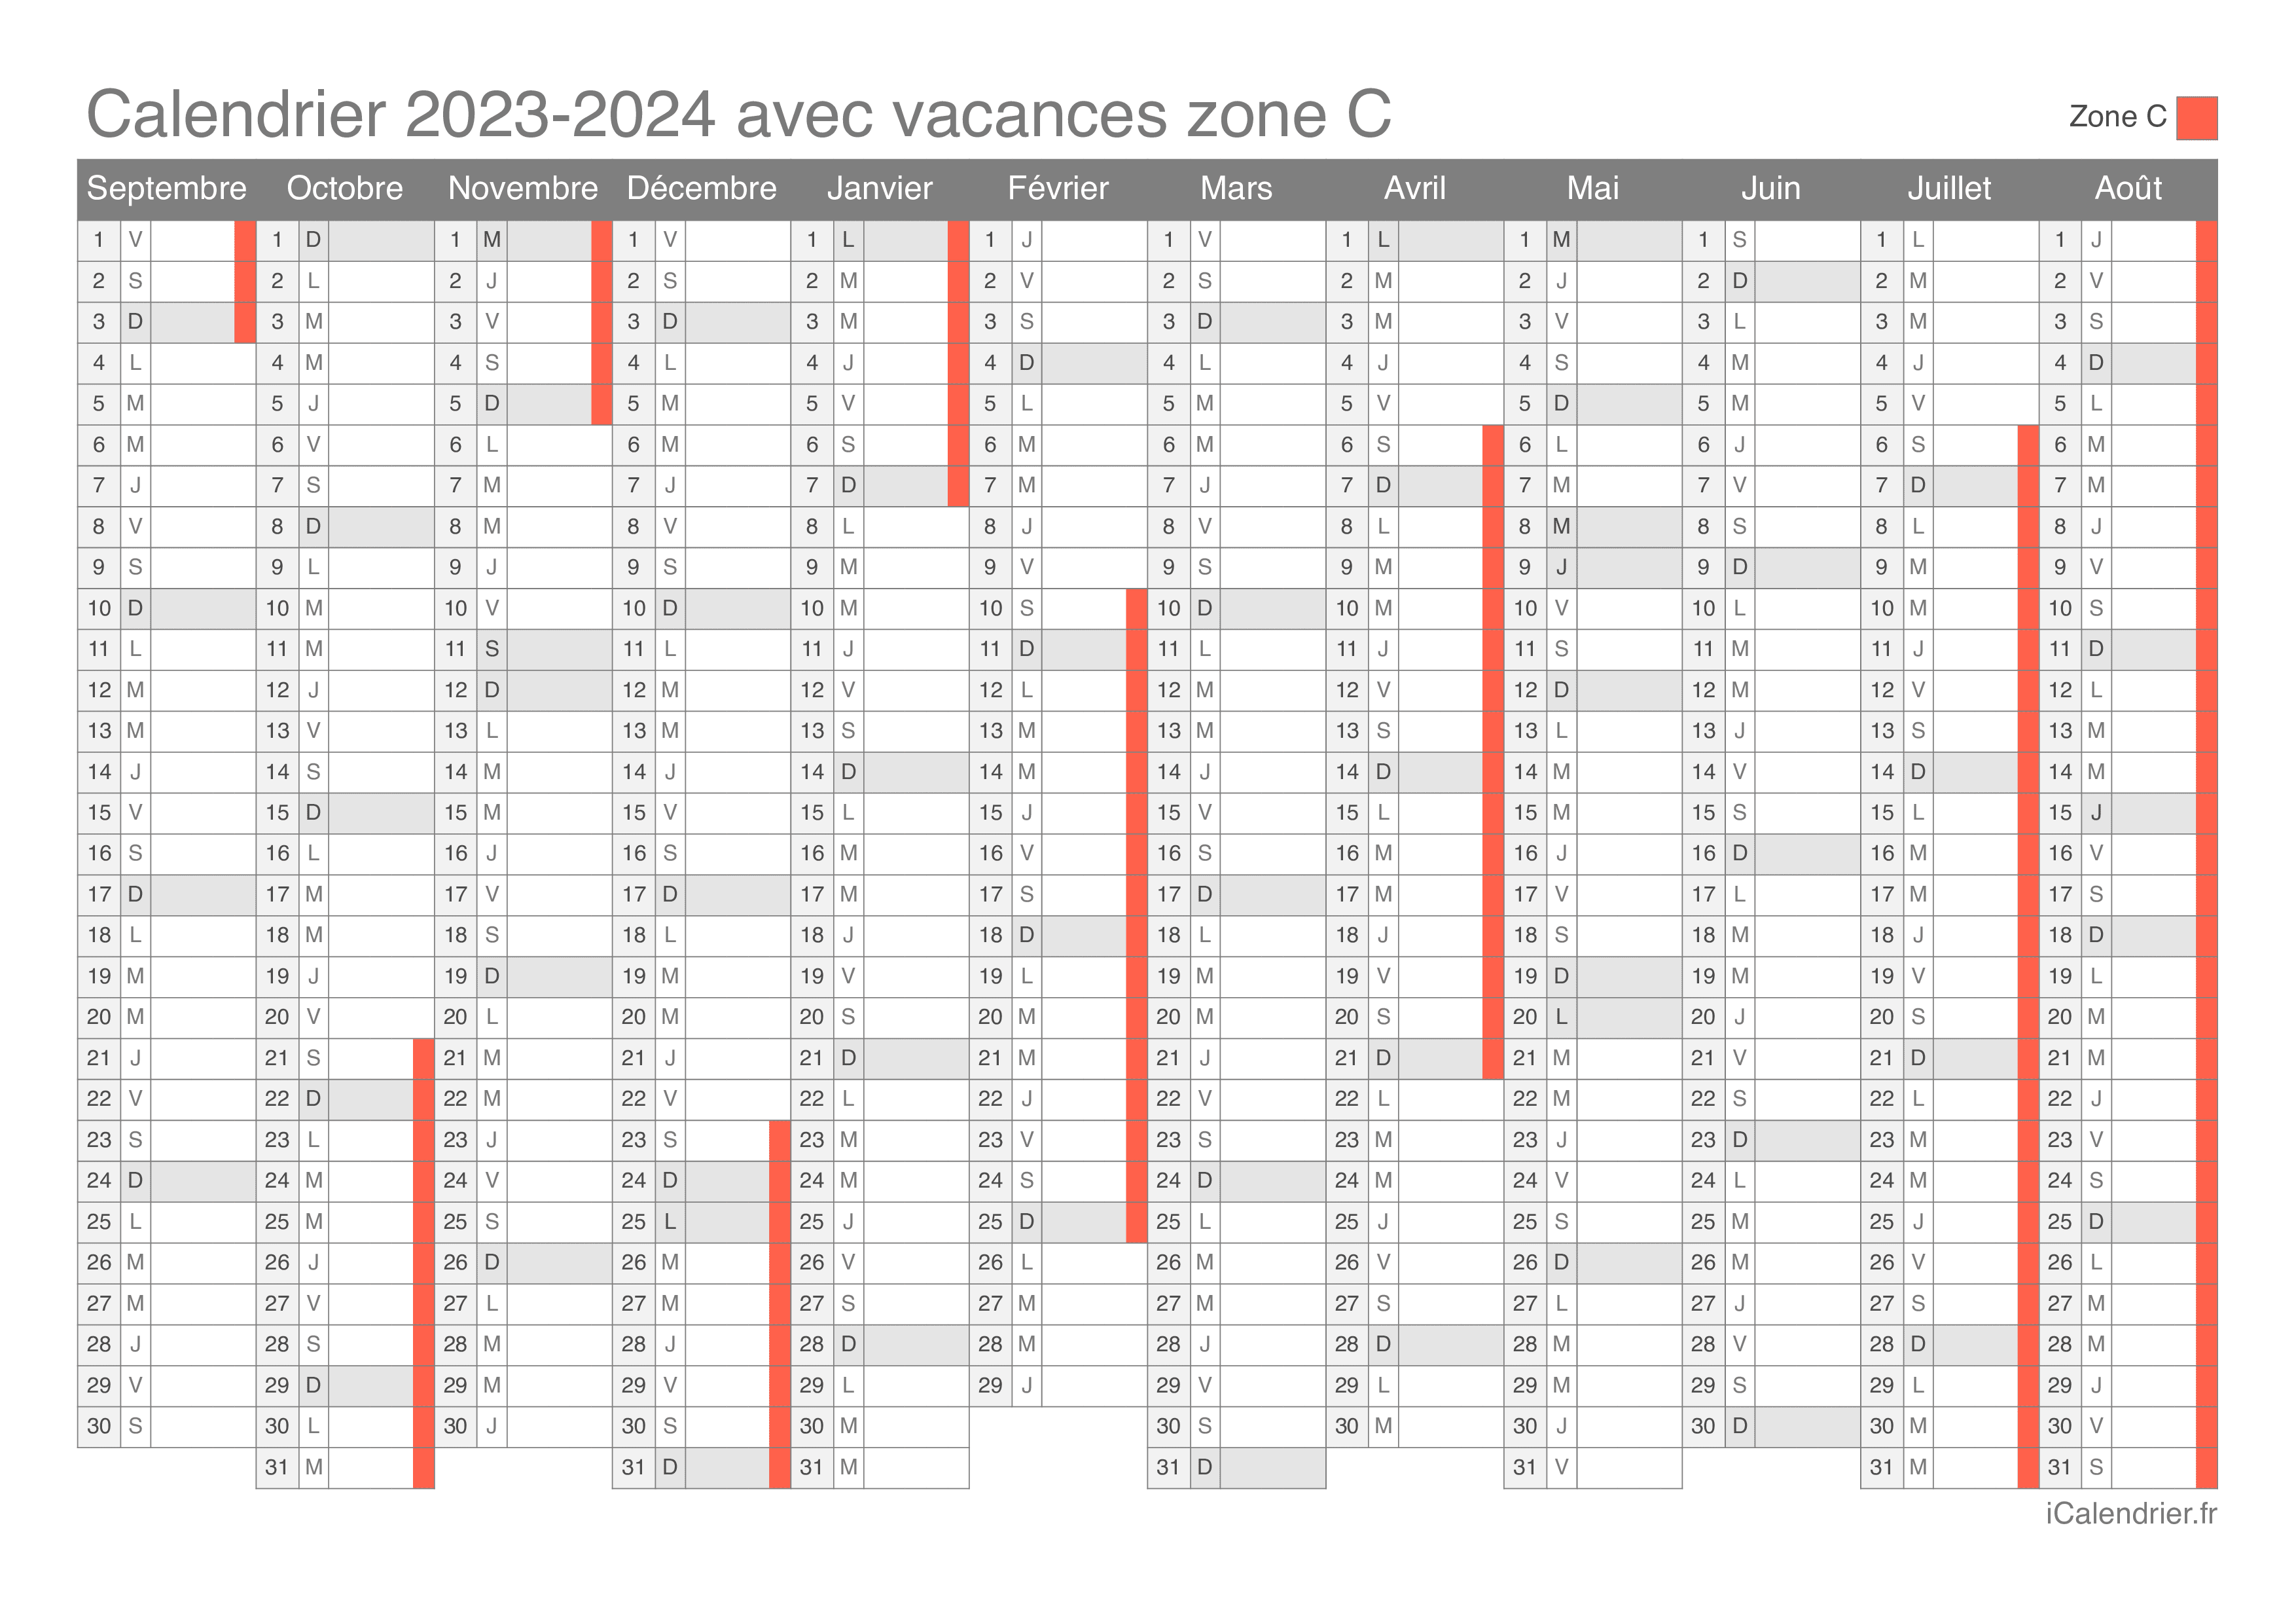 Calendrier scolaire 2023-2024 avec les dates des vacances scolaires des  zones A, B et C